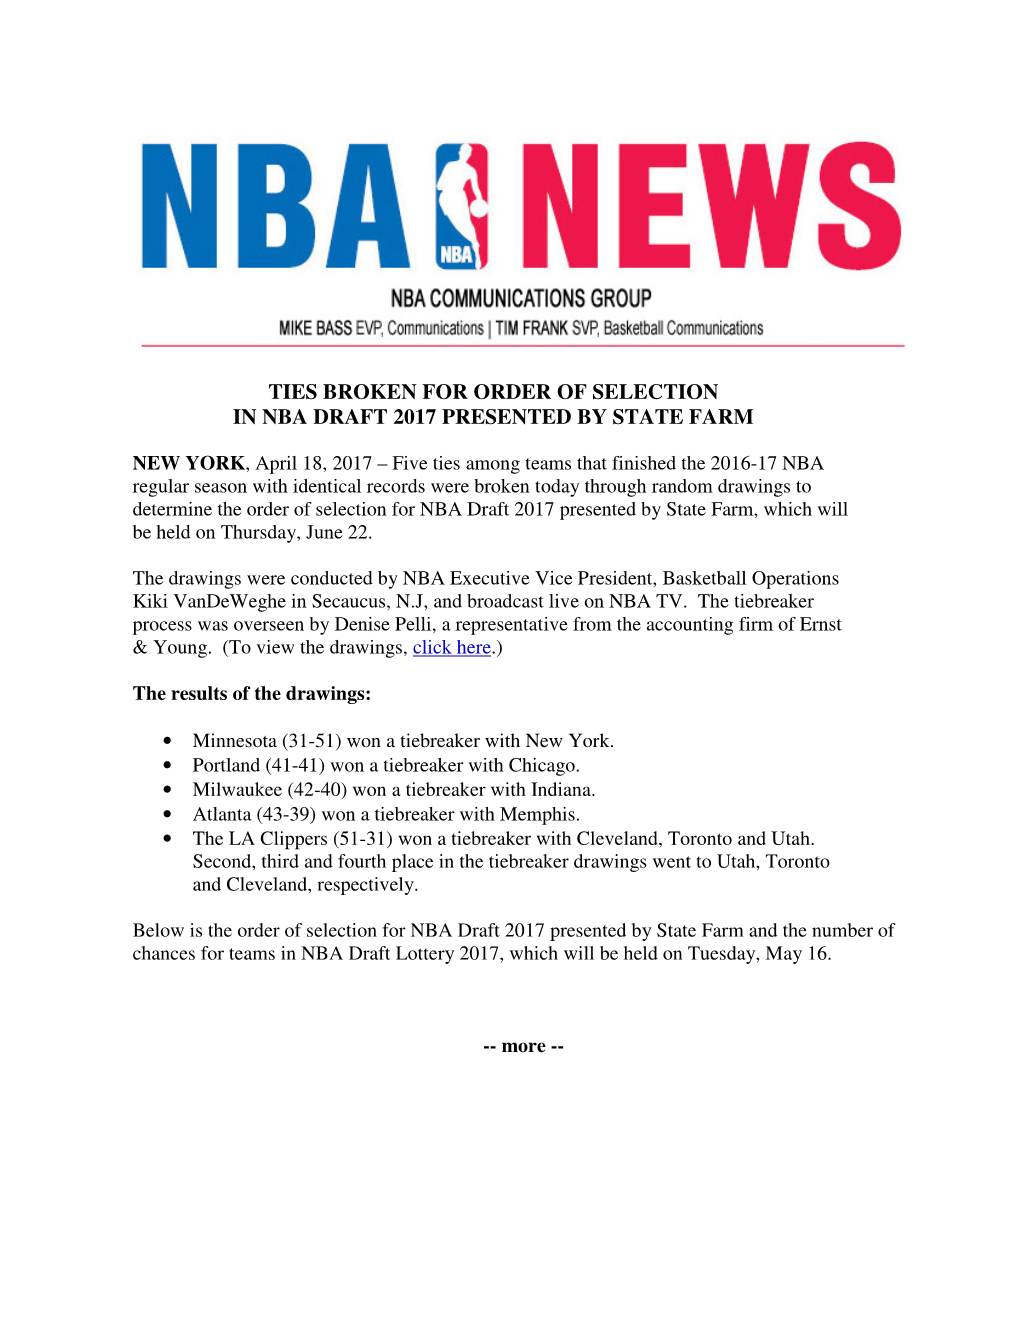 Ties Broken for 2017 NBA Draft